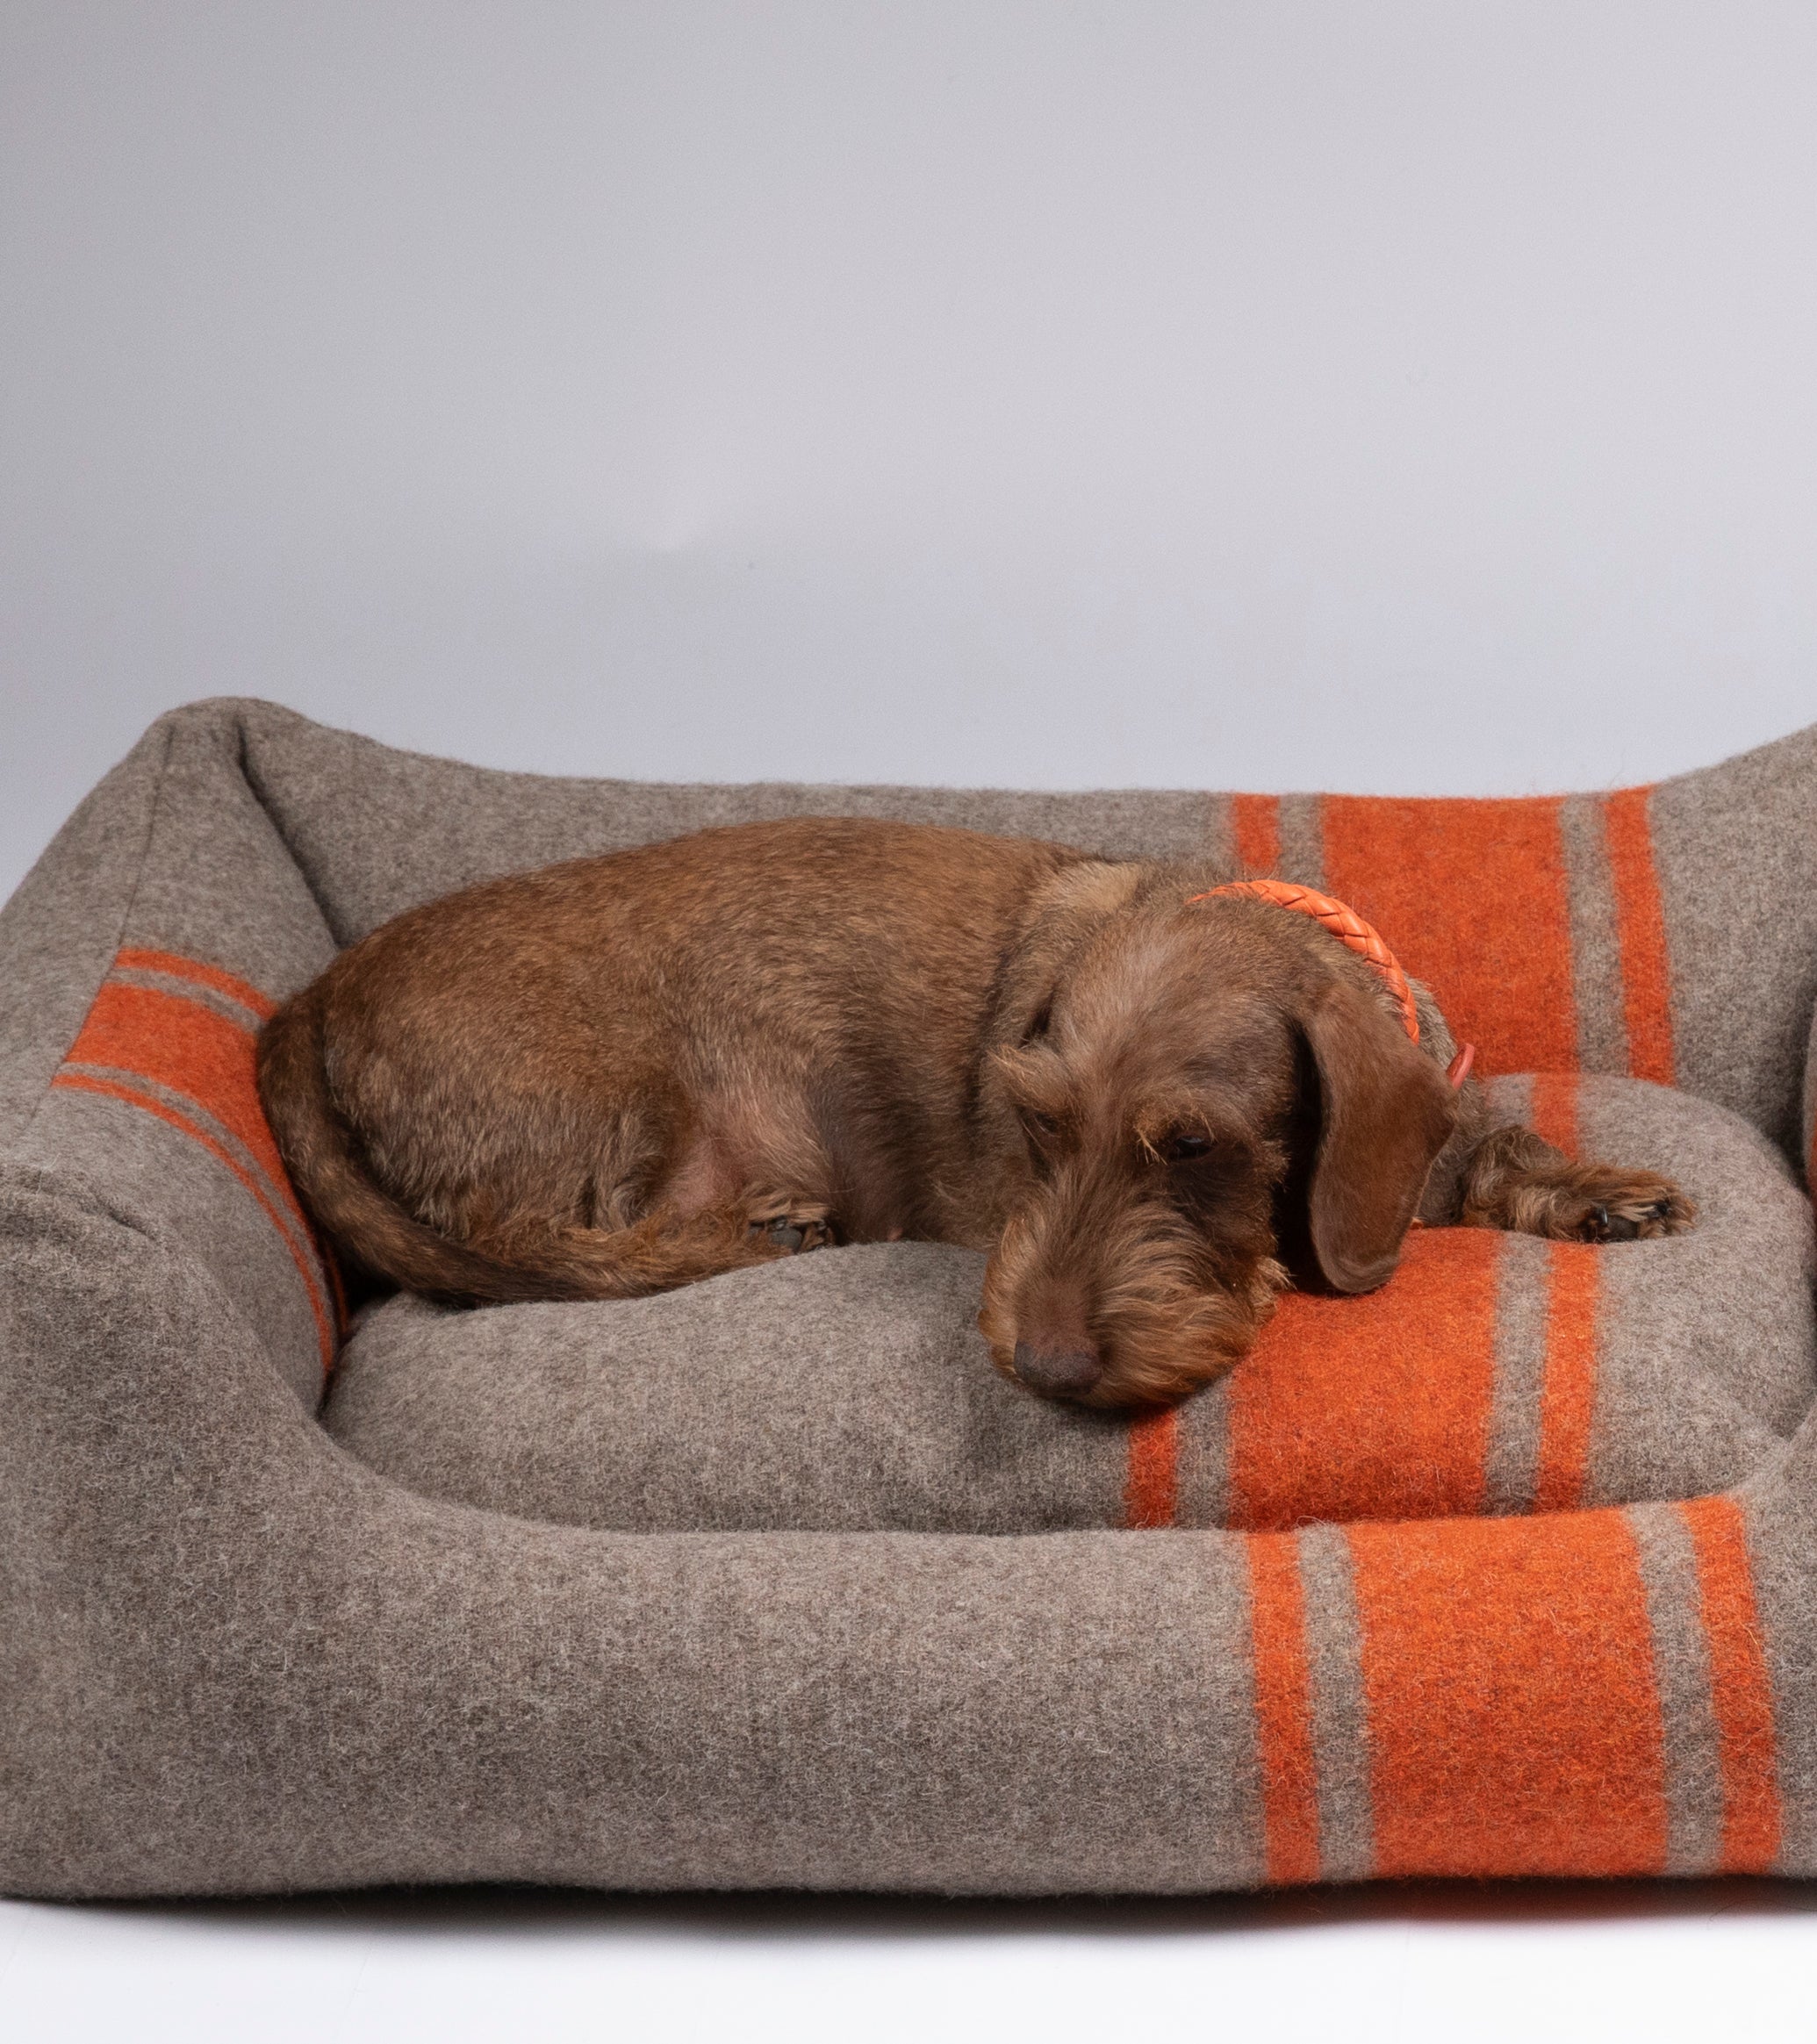 wool-dog-bed-orange-cozyjpg_df7d49fd-1e71-491d-999e-2f3ab3dbfb09.jpg